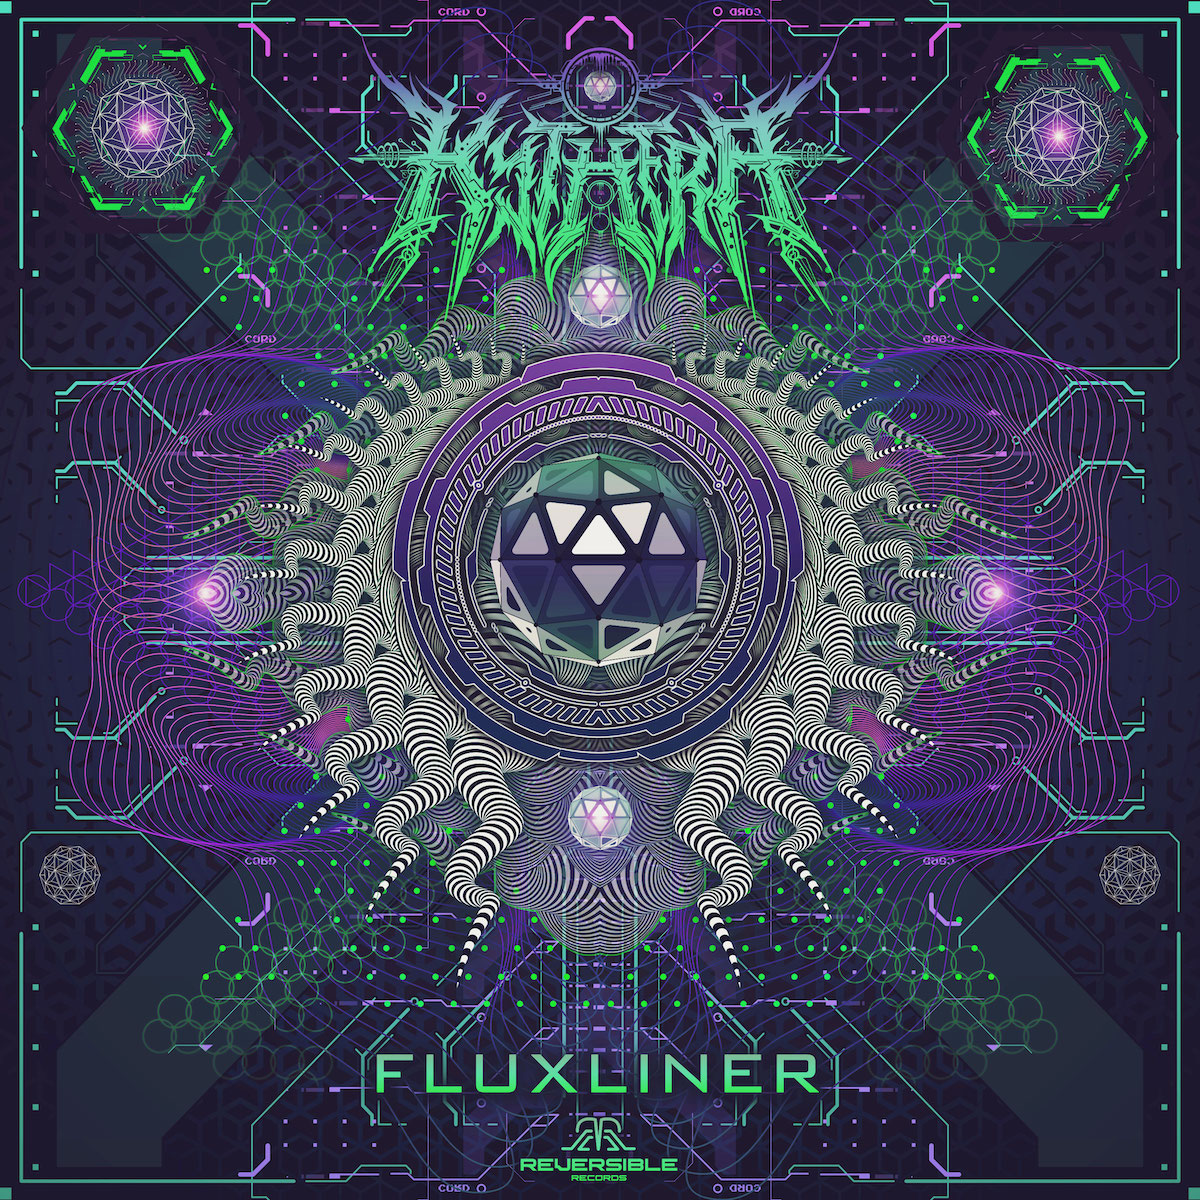 Fluxliner